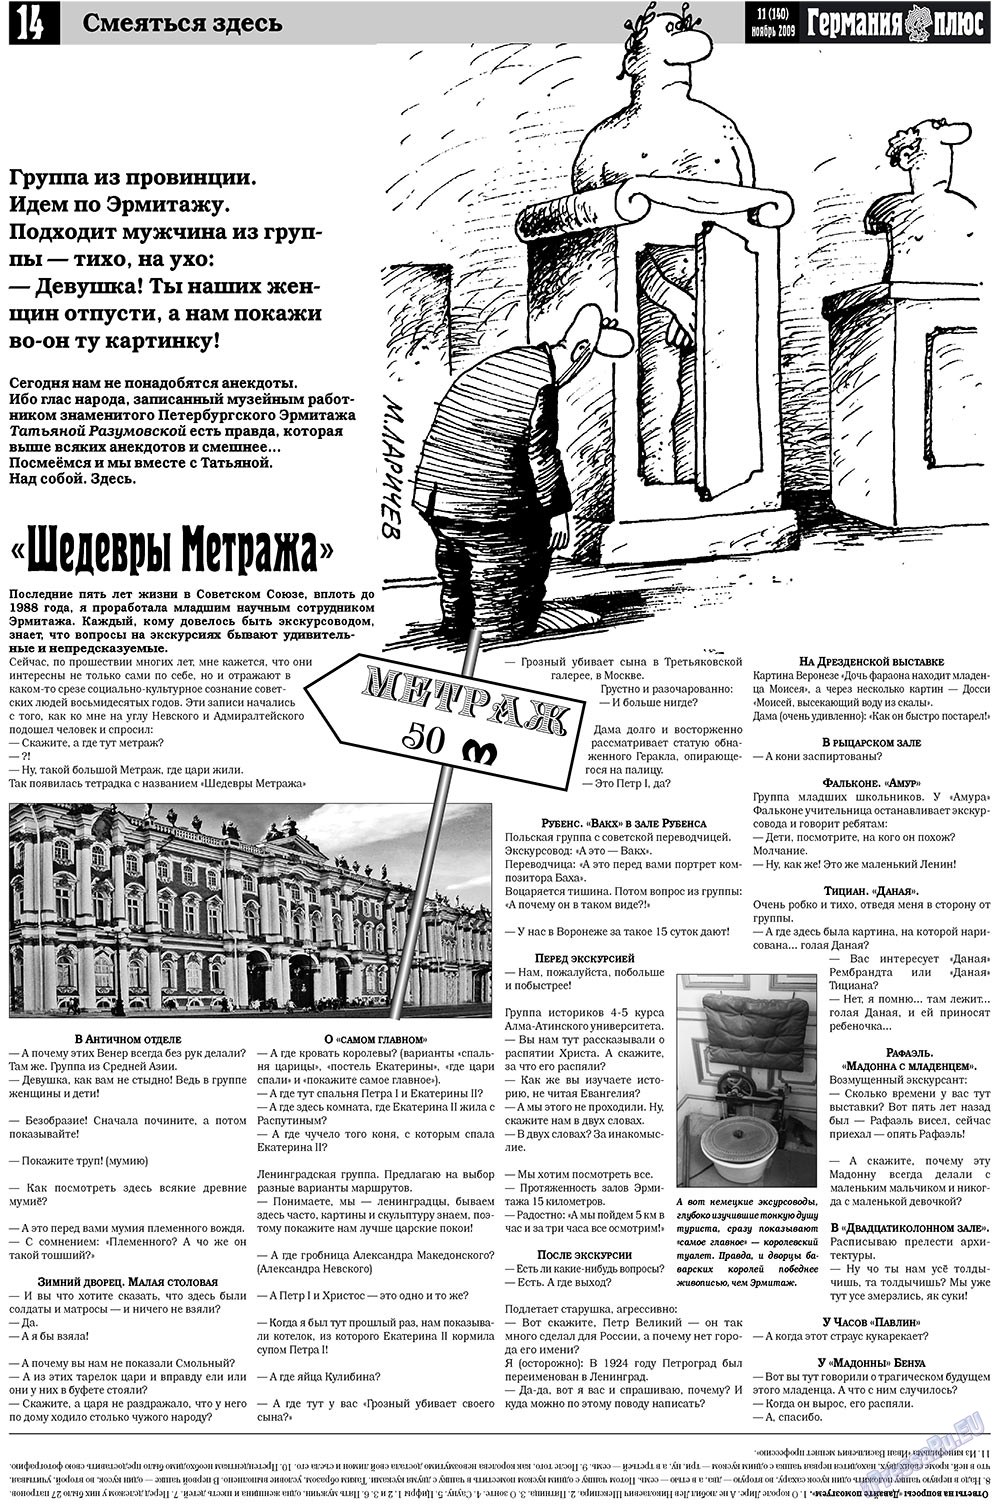 Германия плюс, газета. 2009 №11 стр.14